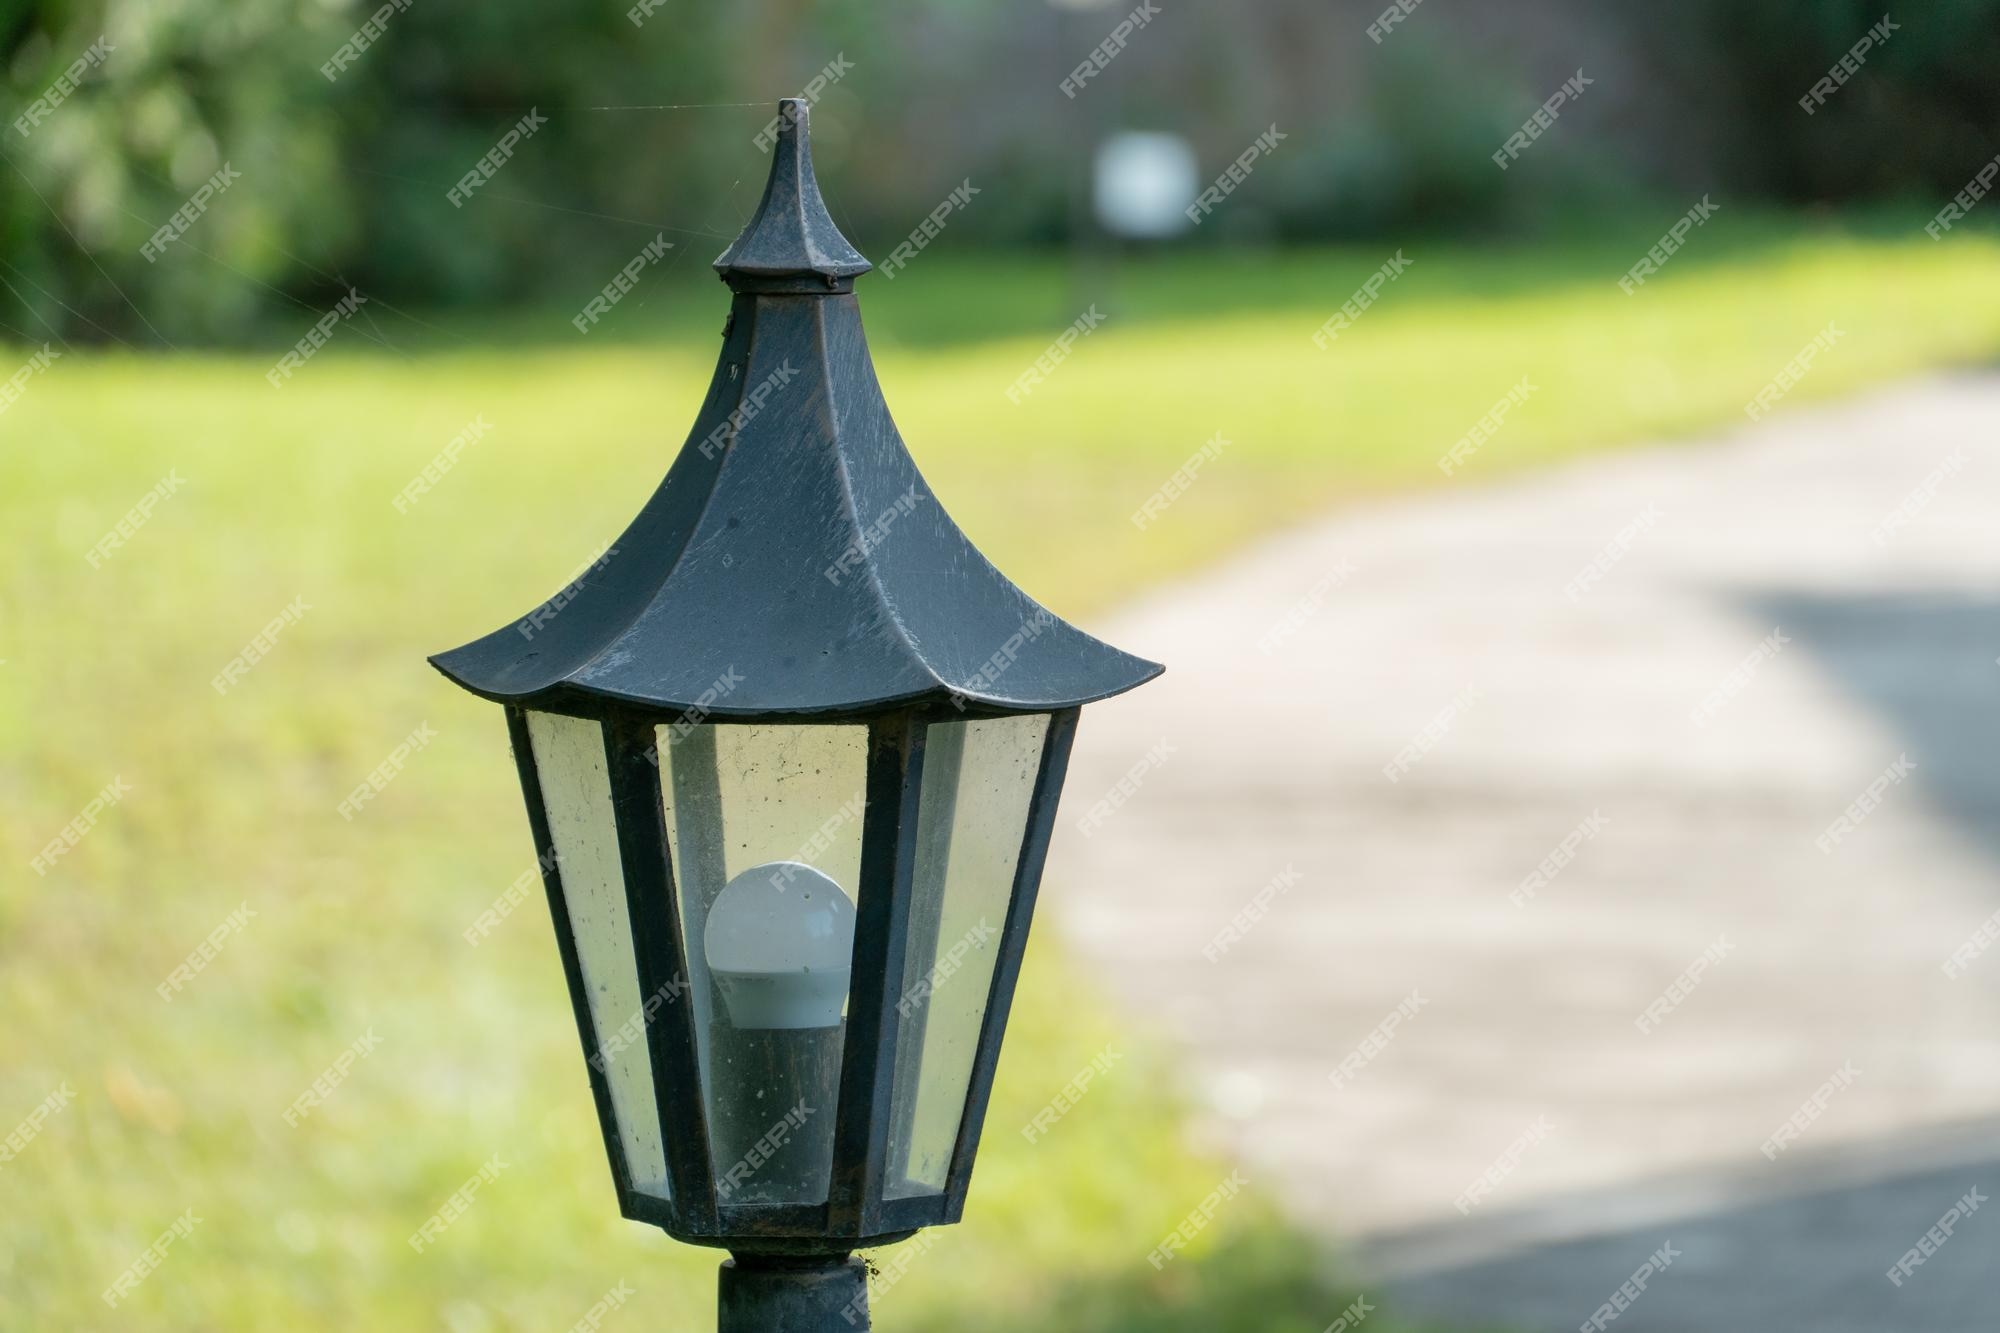 landbouw Wanorde beschaving Decoratieve kleine tuinlamp lantaarns op een bloembed en in een groene tuin  tuinontwerp een kleine lantaarn geeft gezelligheid en comfort in de tuin  van het huis | Premium Foto